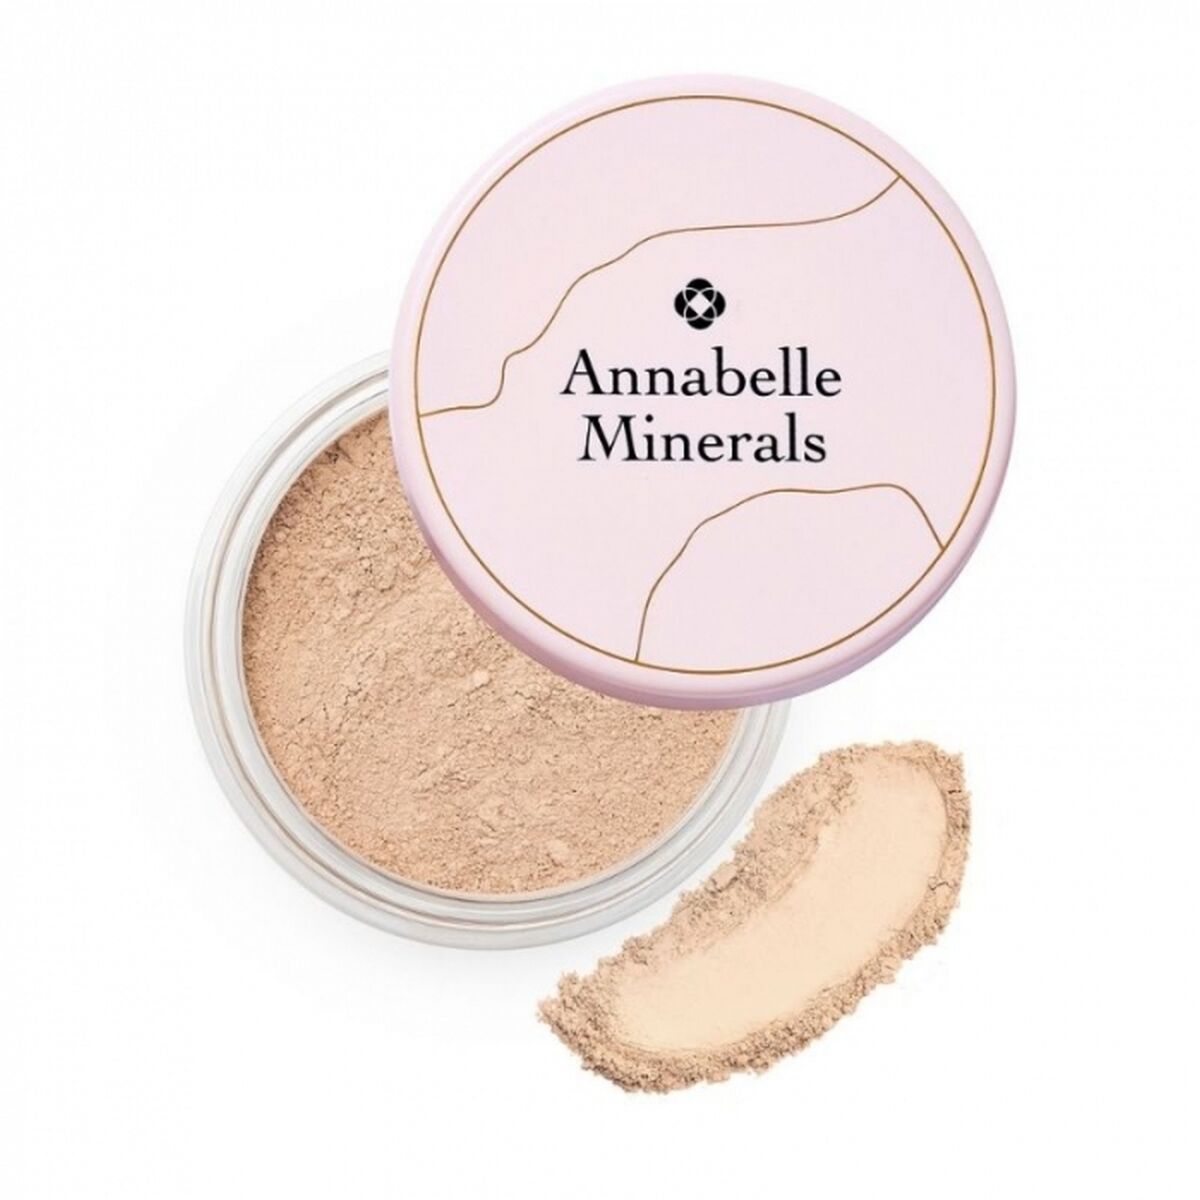 Annabelle Minerals Podkład mineralny - rozświetlający Sunny Sand - 4g